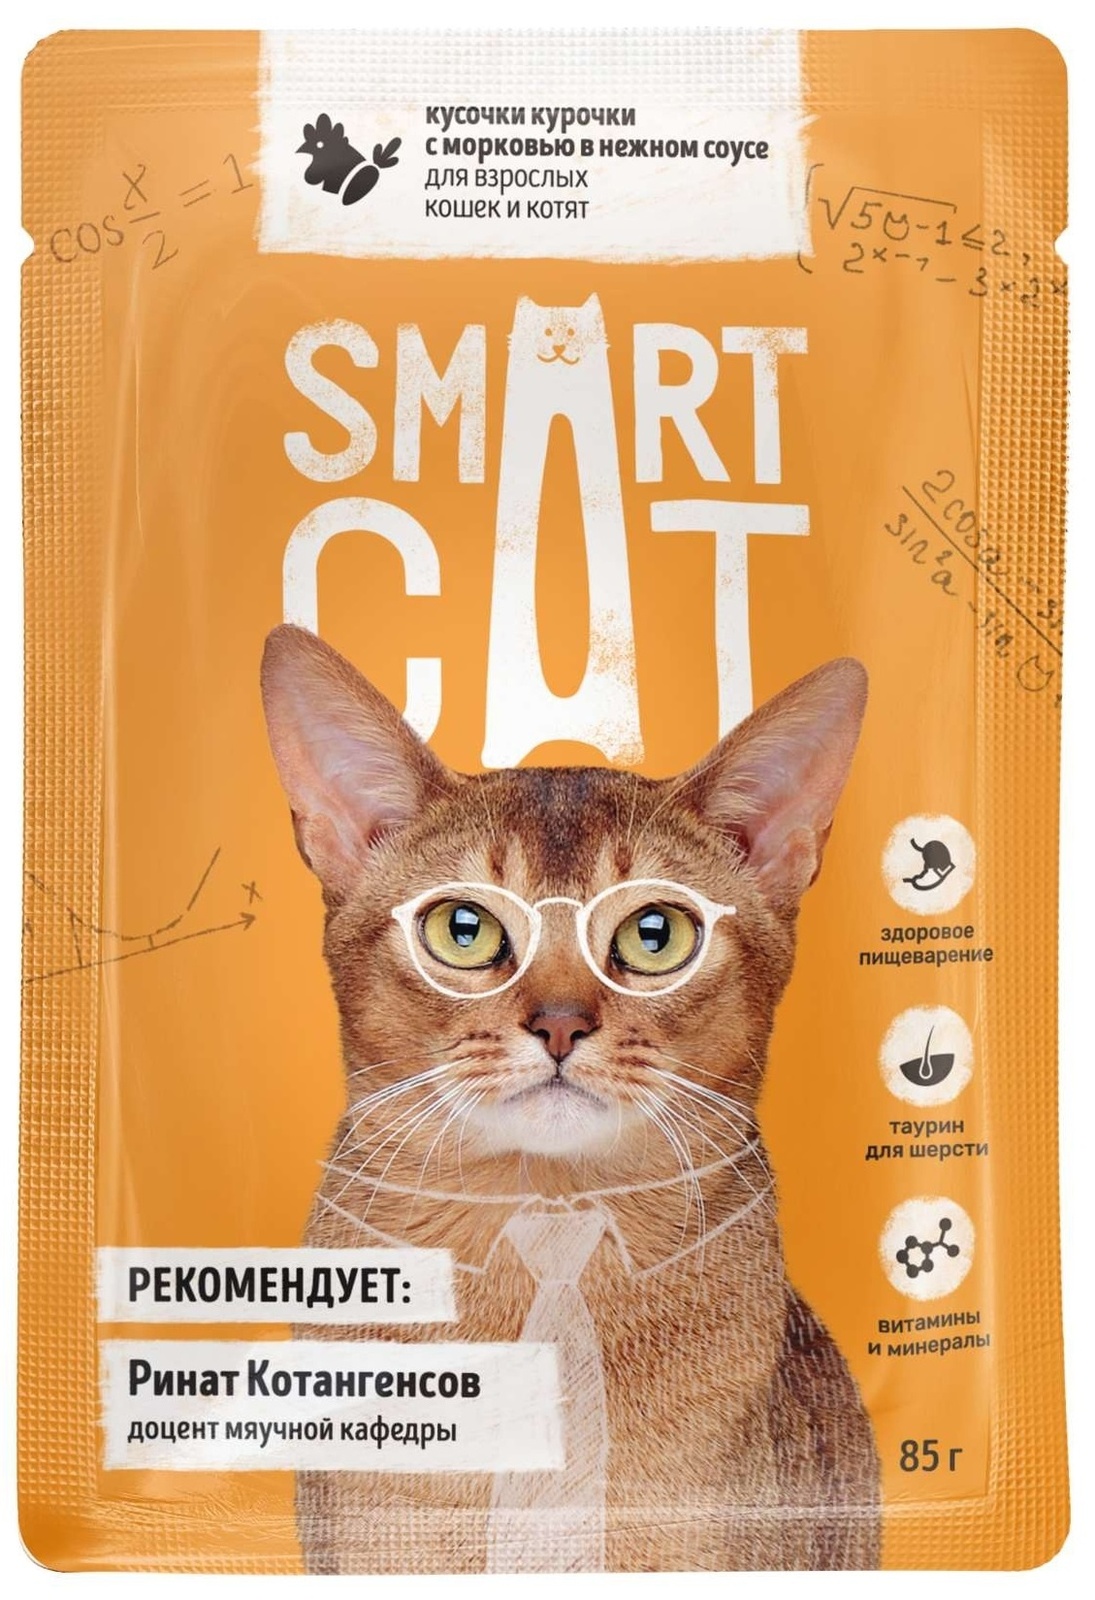 Smart Cat Smart Cat паучи для взрослых кошек и котят: кусочки курочки с морковью в нежном соусе (85 г)